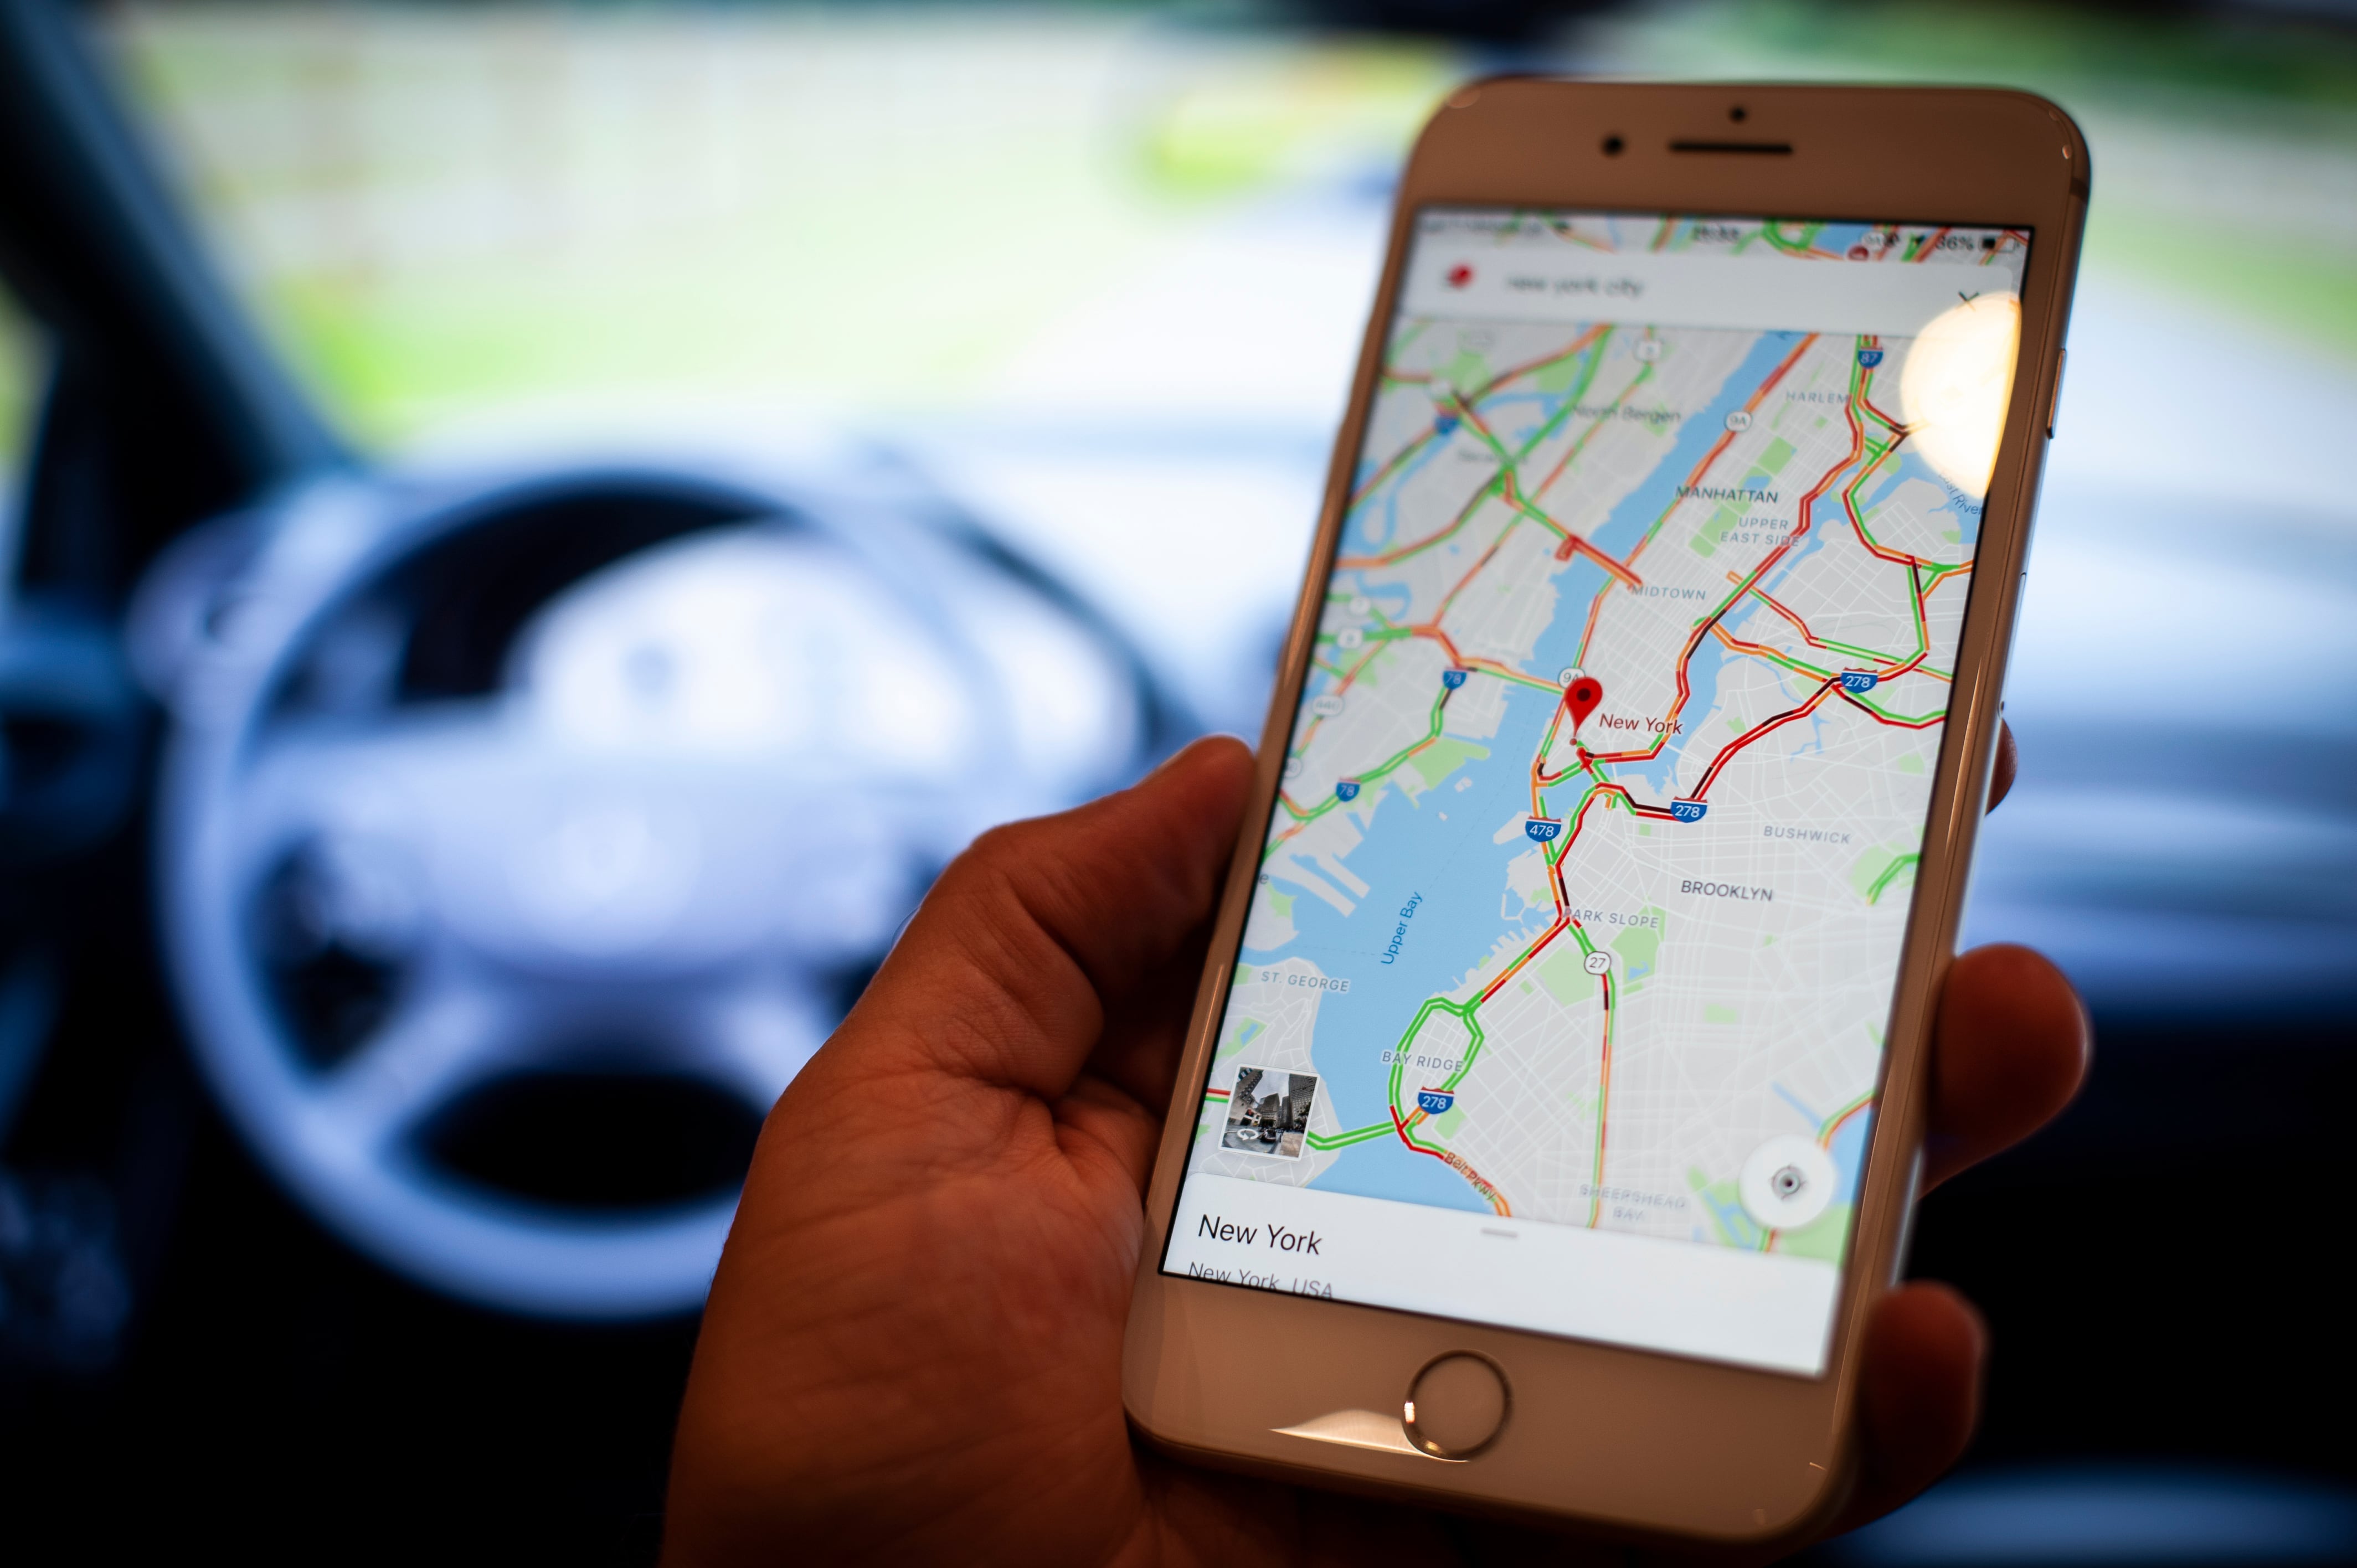 Los mejores trucos de Google Maps: dónde aparcar, incidencias, cómo ahorrar combustible y mucho más